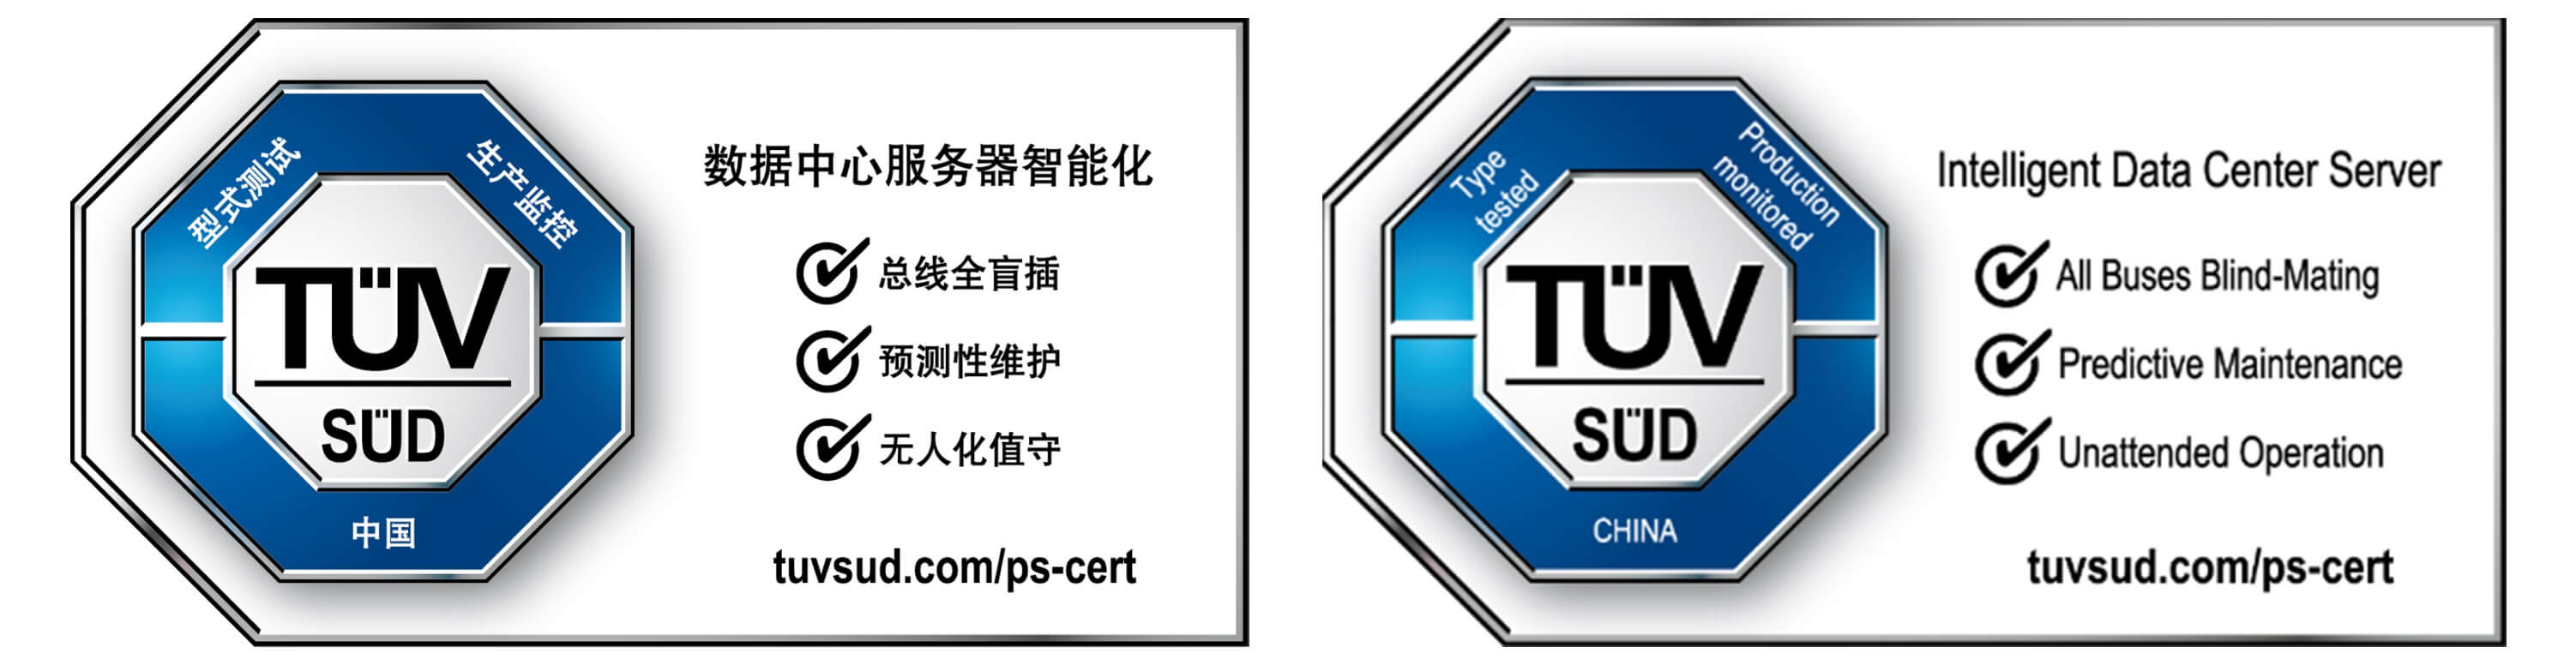 TÜV南德数据中心服务器智能认证标志